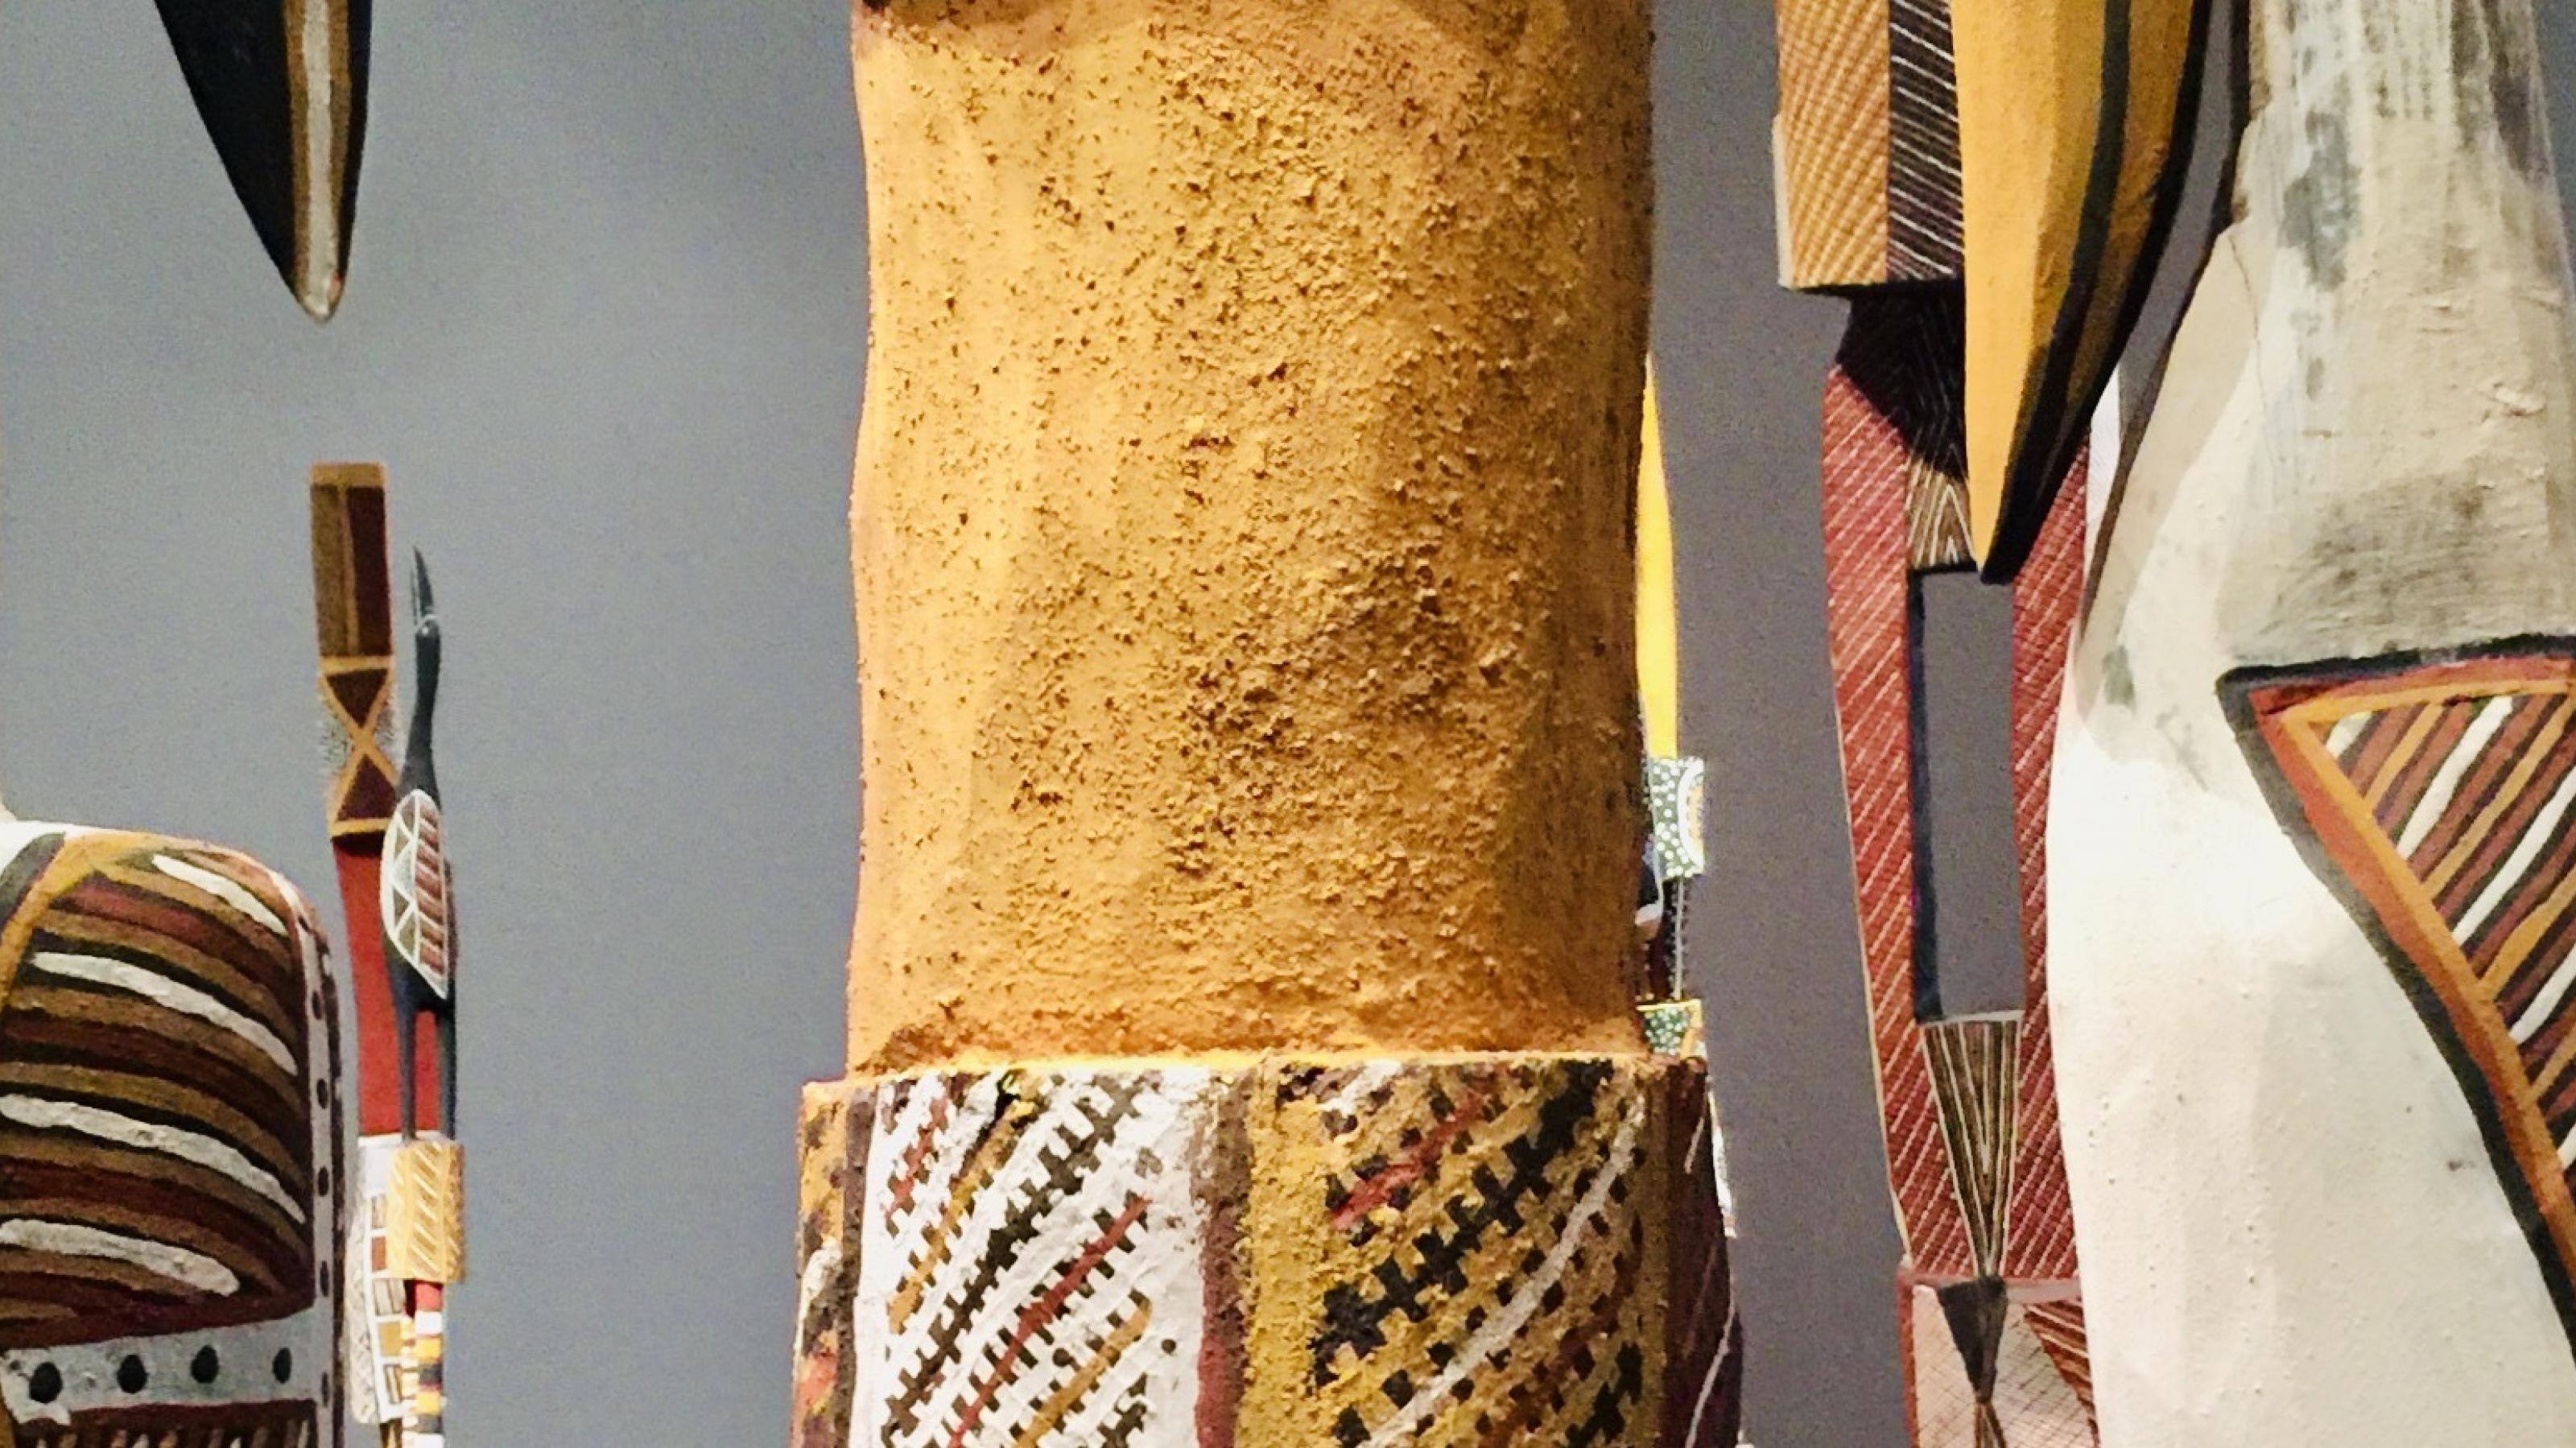 Das Bild zeigt Tutunis, kunstvoll geschnitzte Grabpfähle der Aboriginals auf den Tiwi-Islands im Norden Australiens